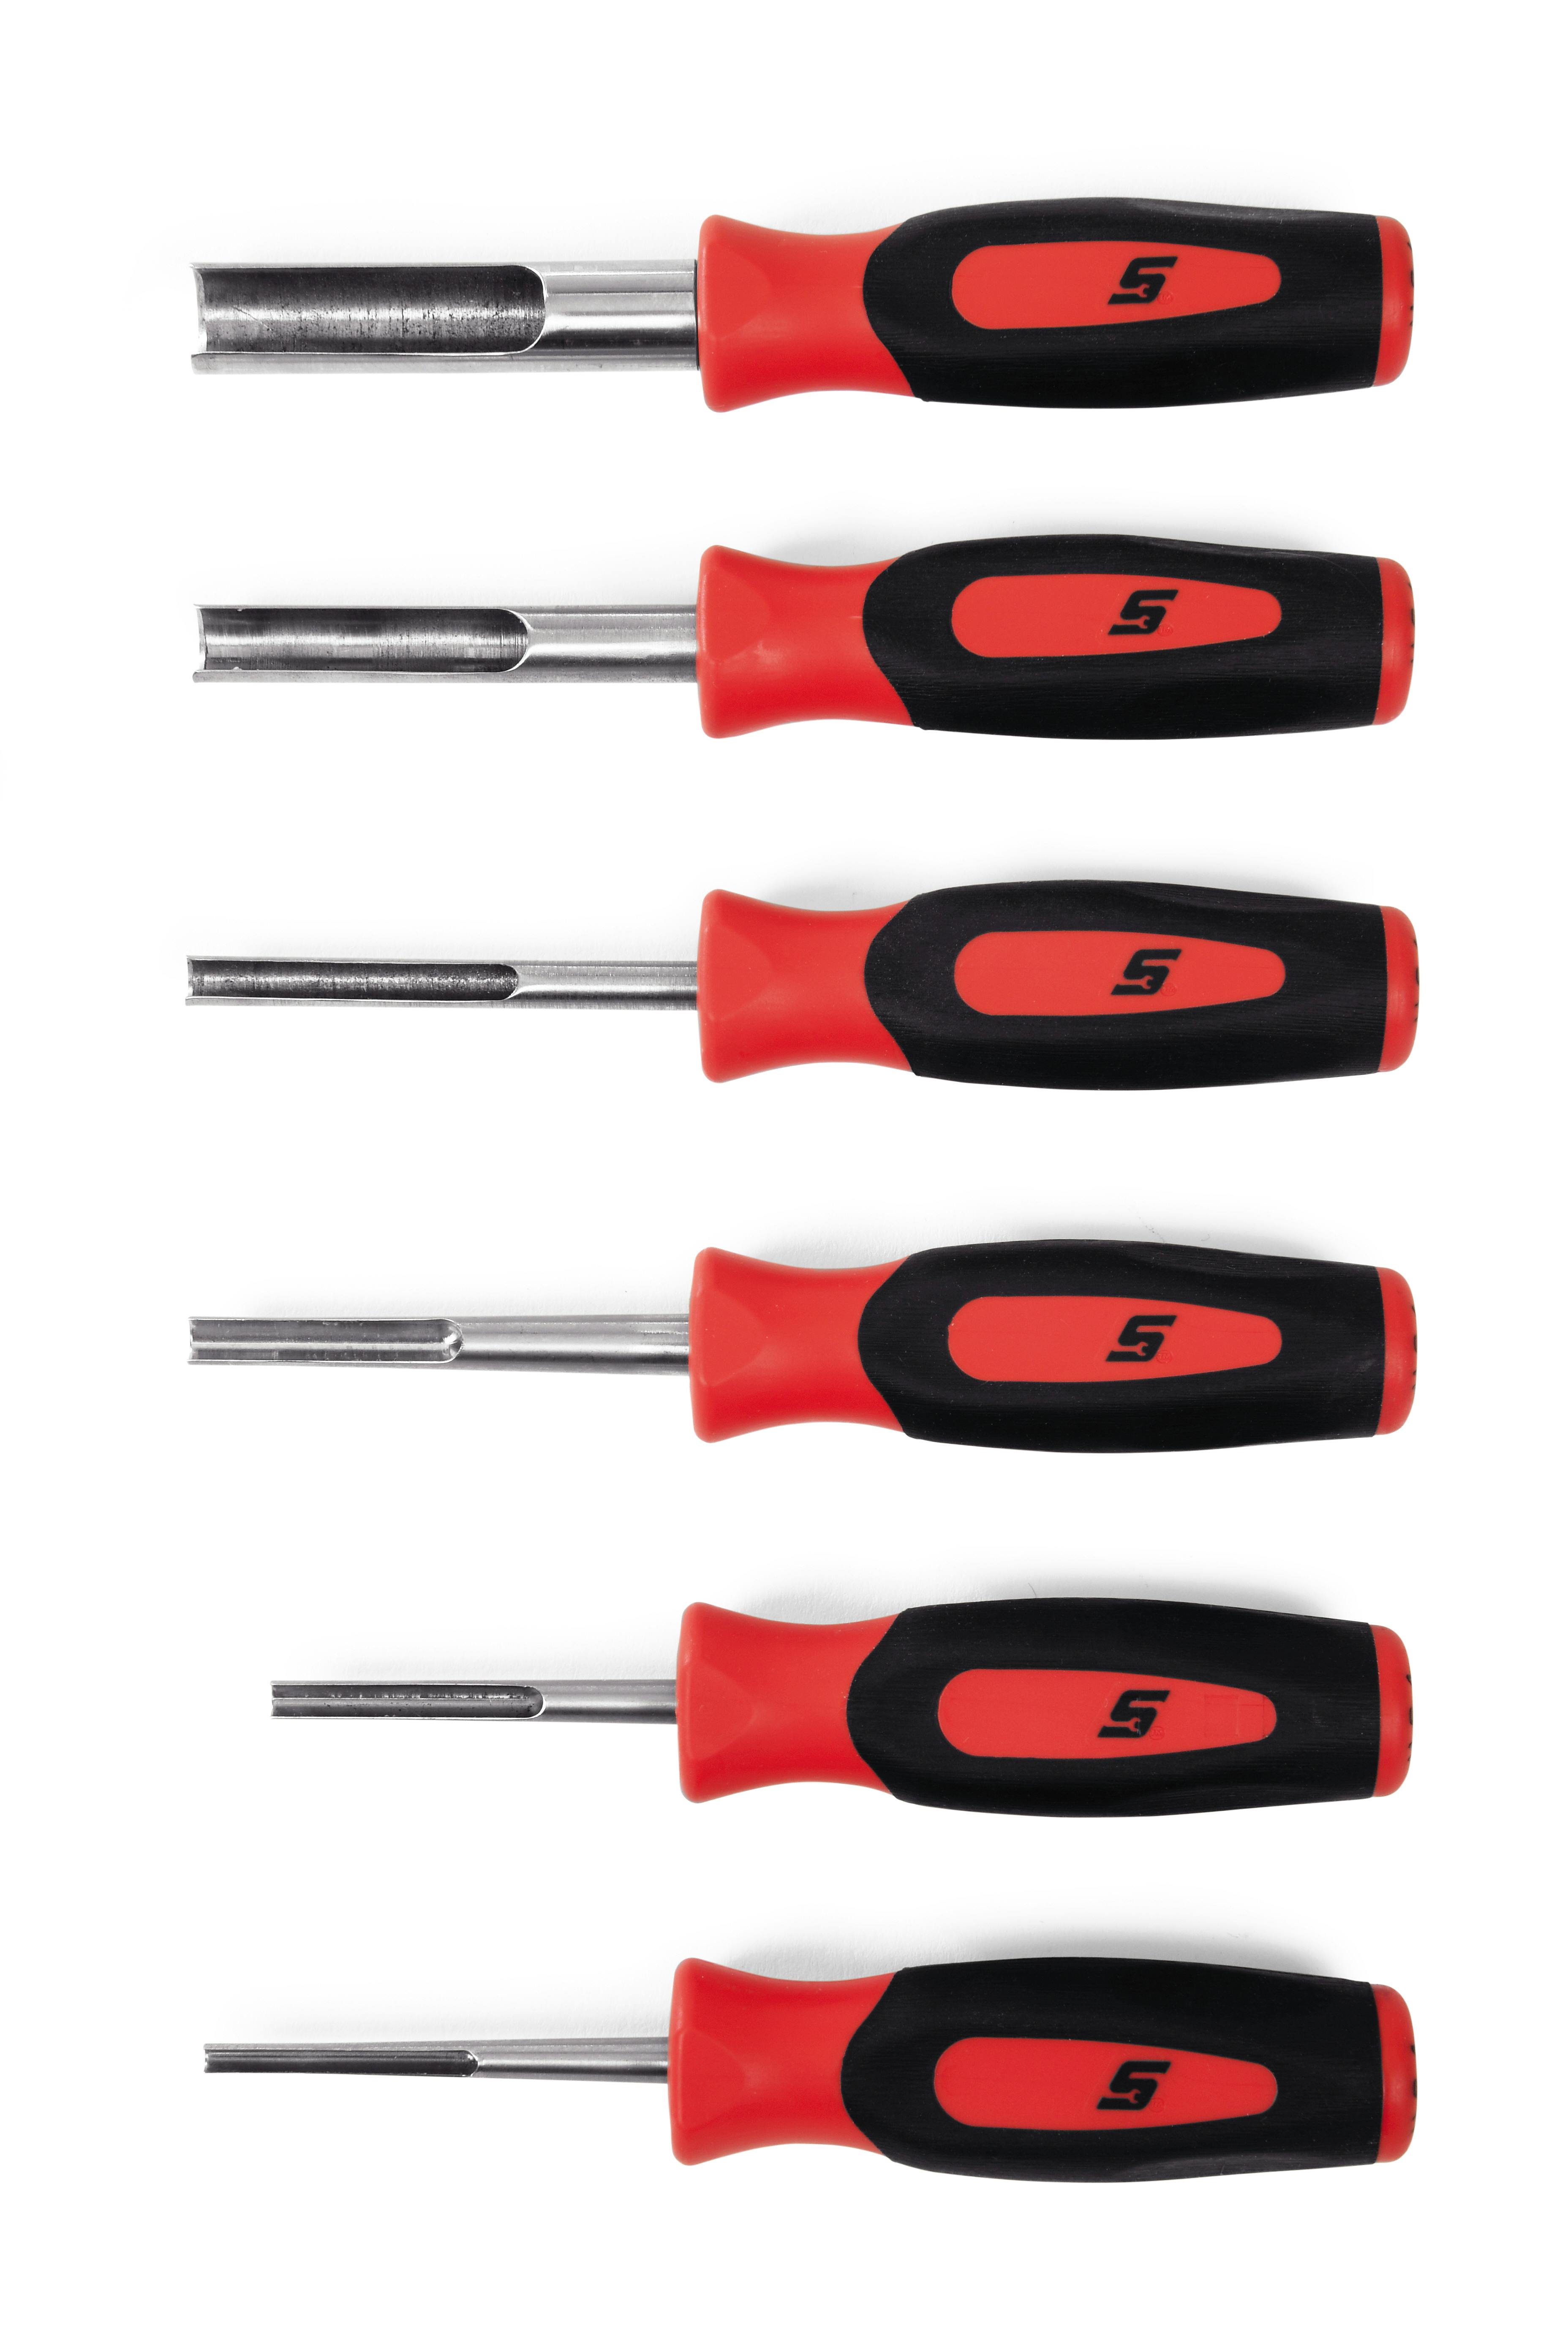 6 pc Deutsch Terminal Tool Kit (Red), SGDTT106